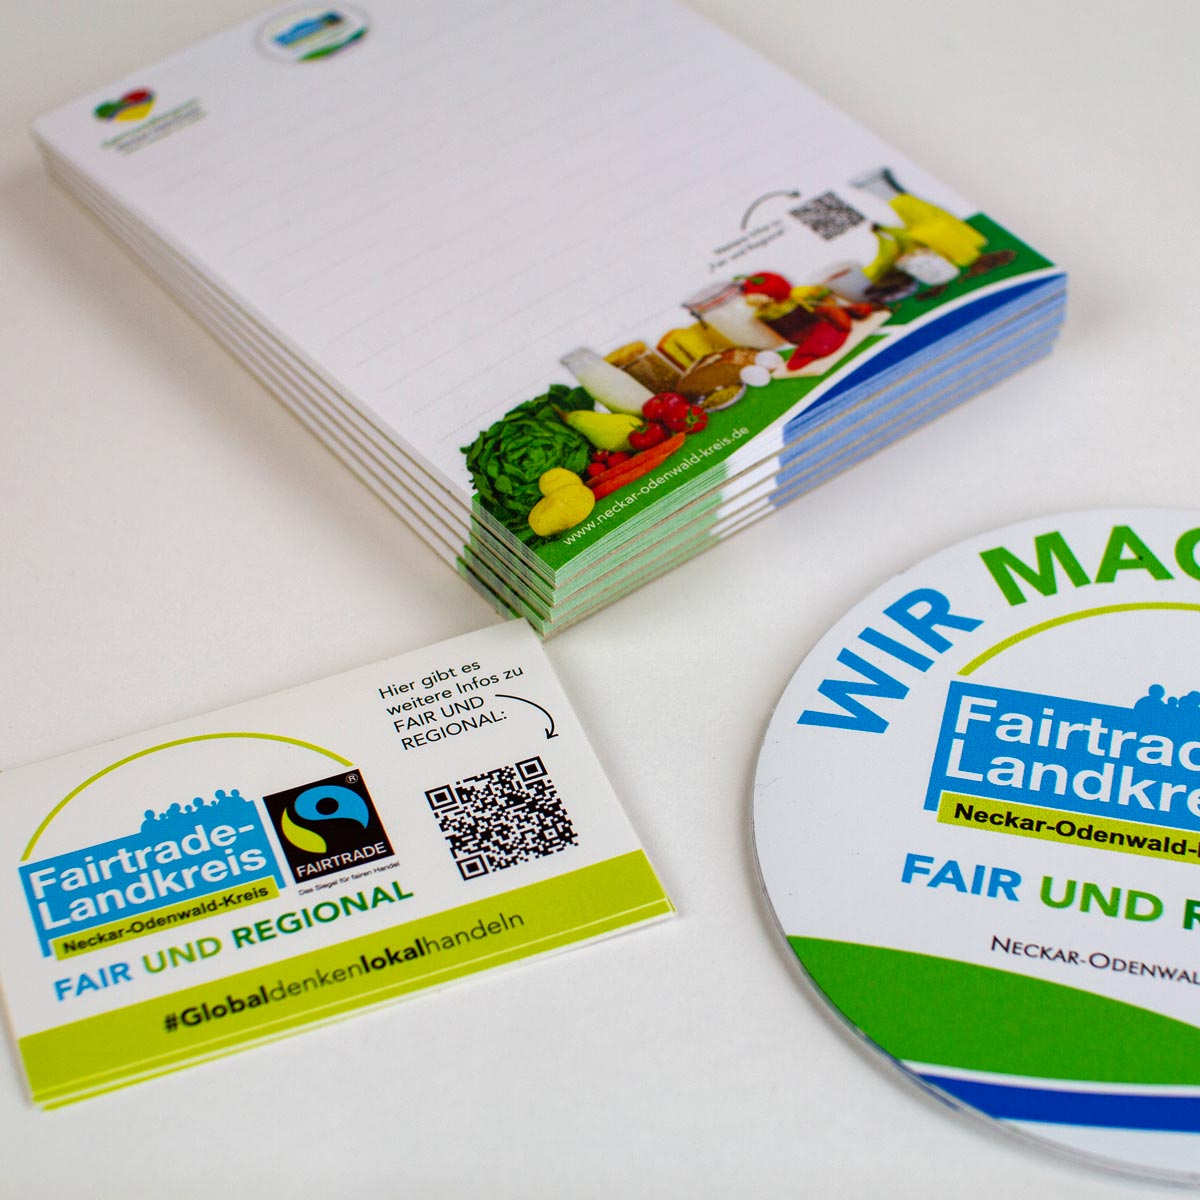 Werbemittel für den "Fairtrade-Landkreis" Neckar-Odenwald-Kreis